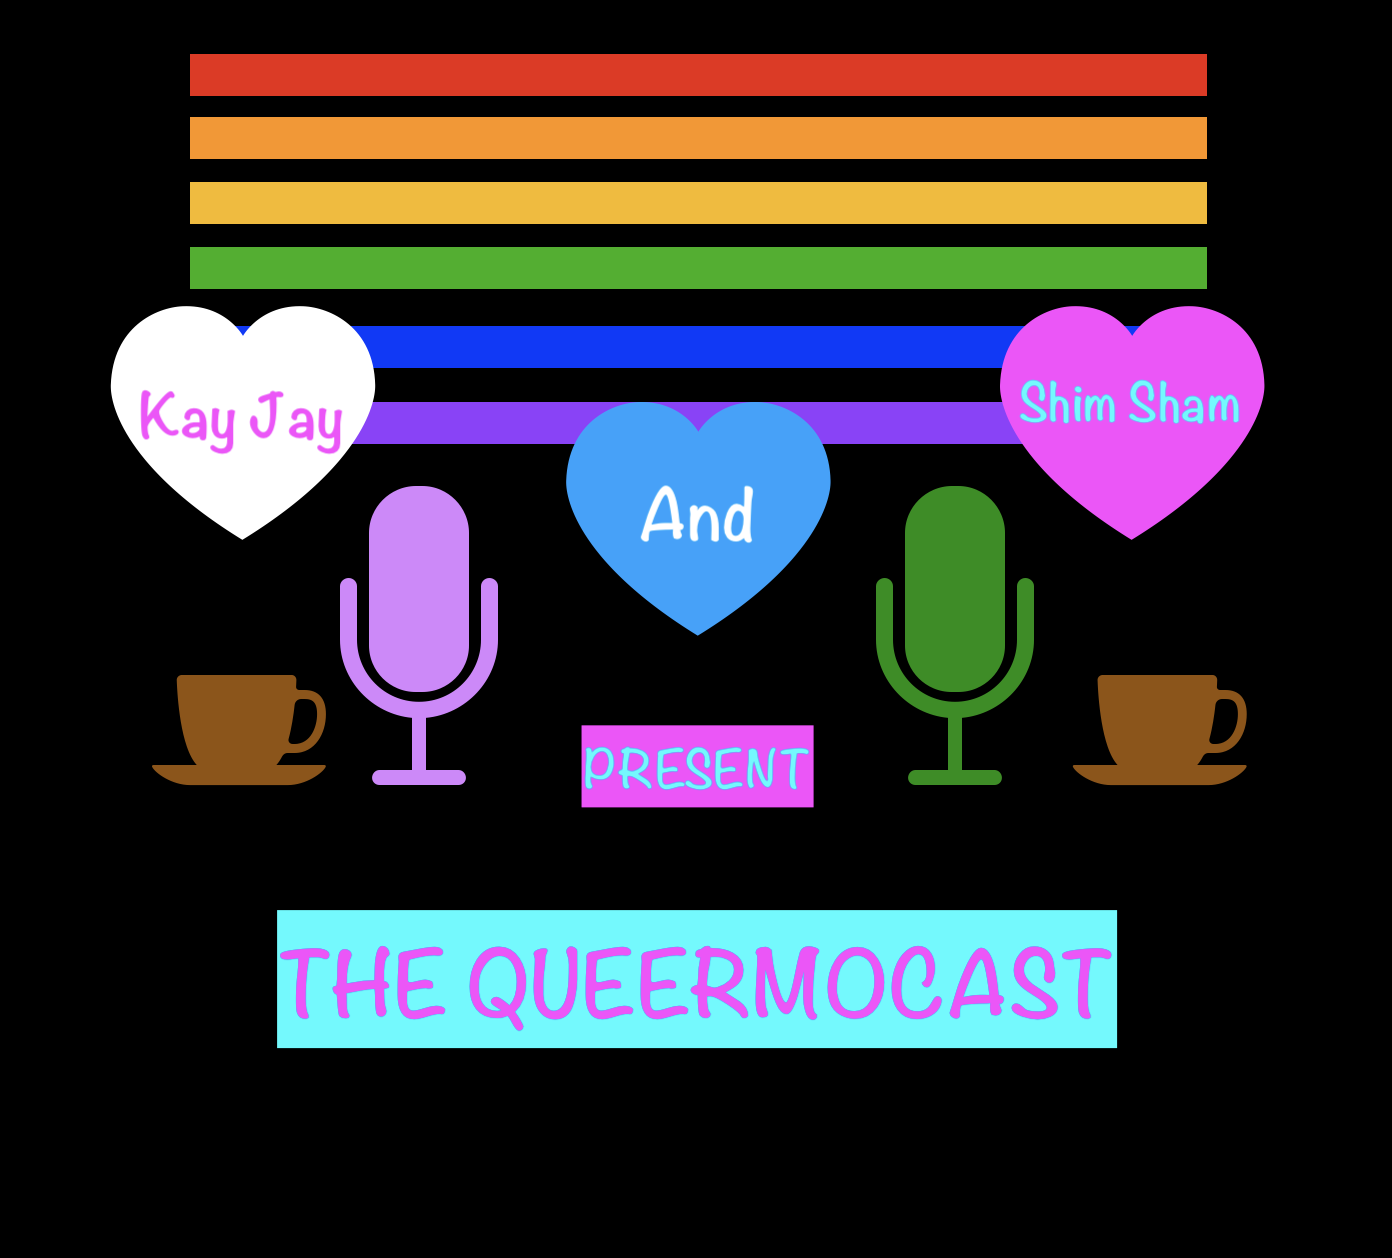 The Queermocast